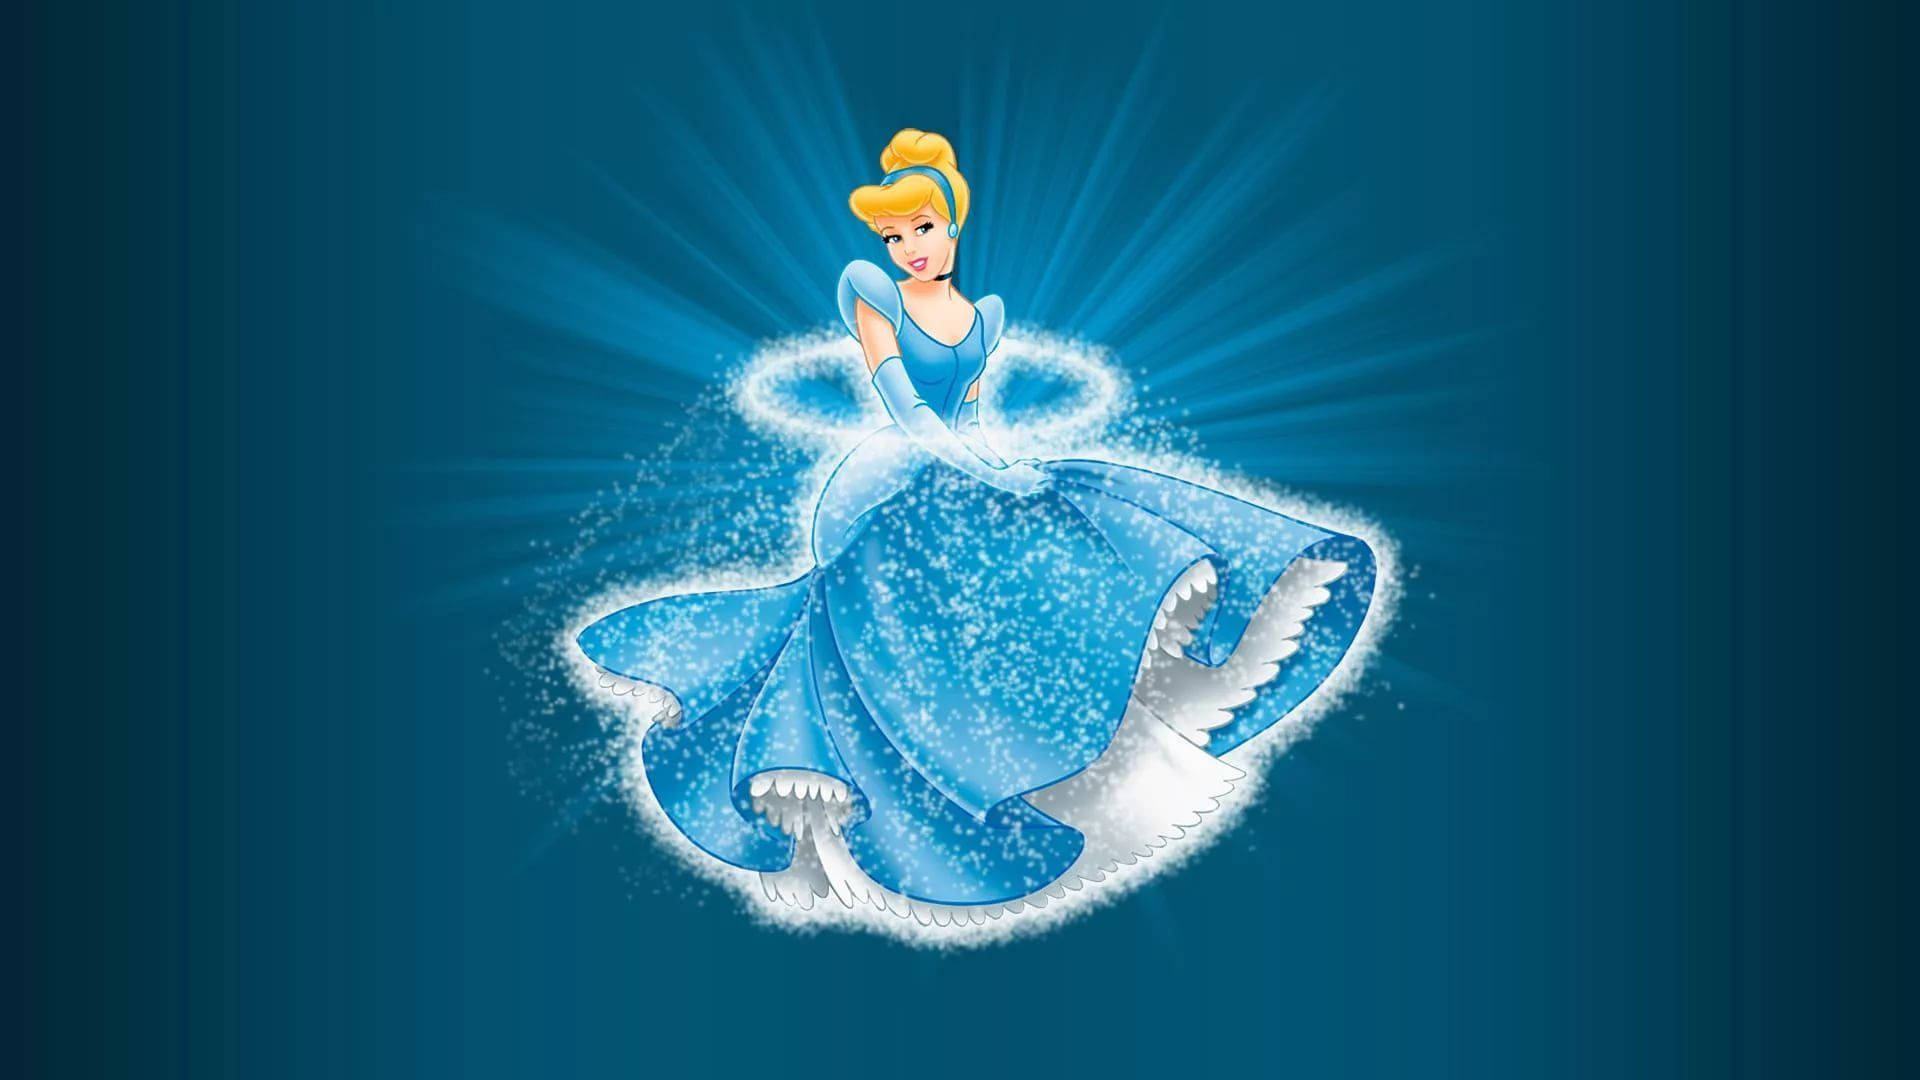 Sparkling Cinderella Illustration Background